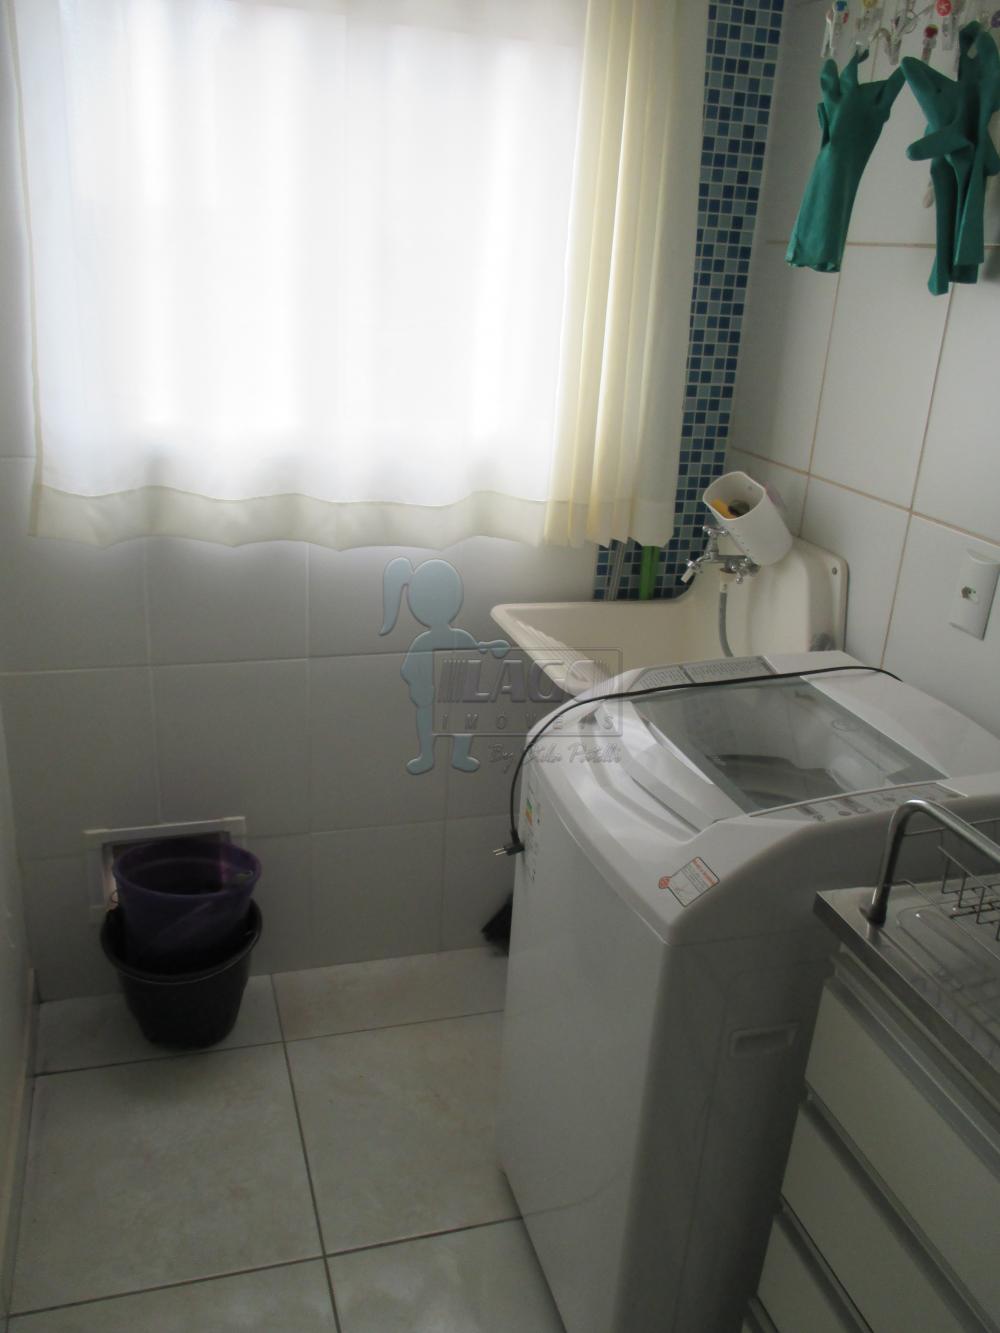 Alugar Apartamento / Padrão em Ribeirão Preto R$ 700,00 - Foto 9